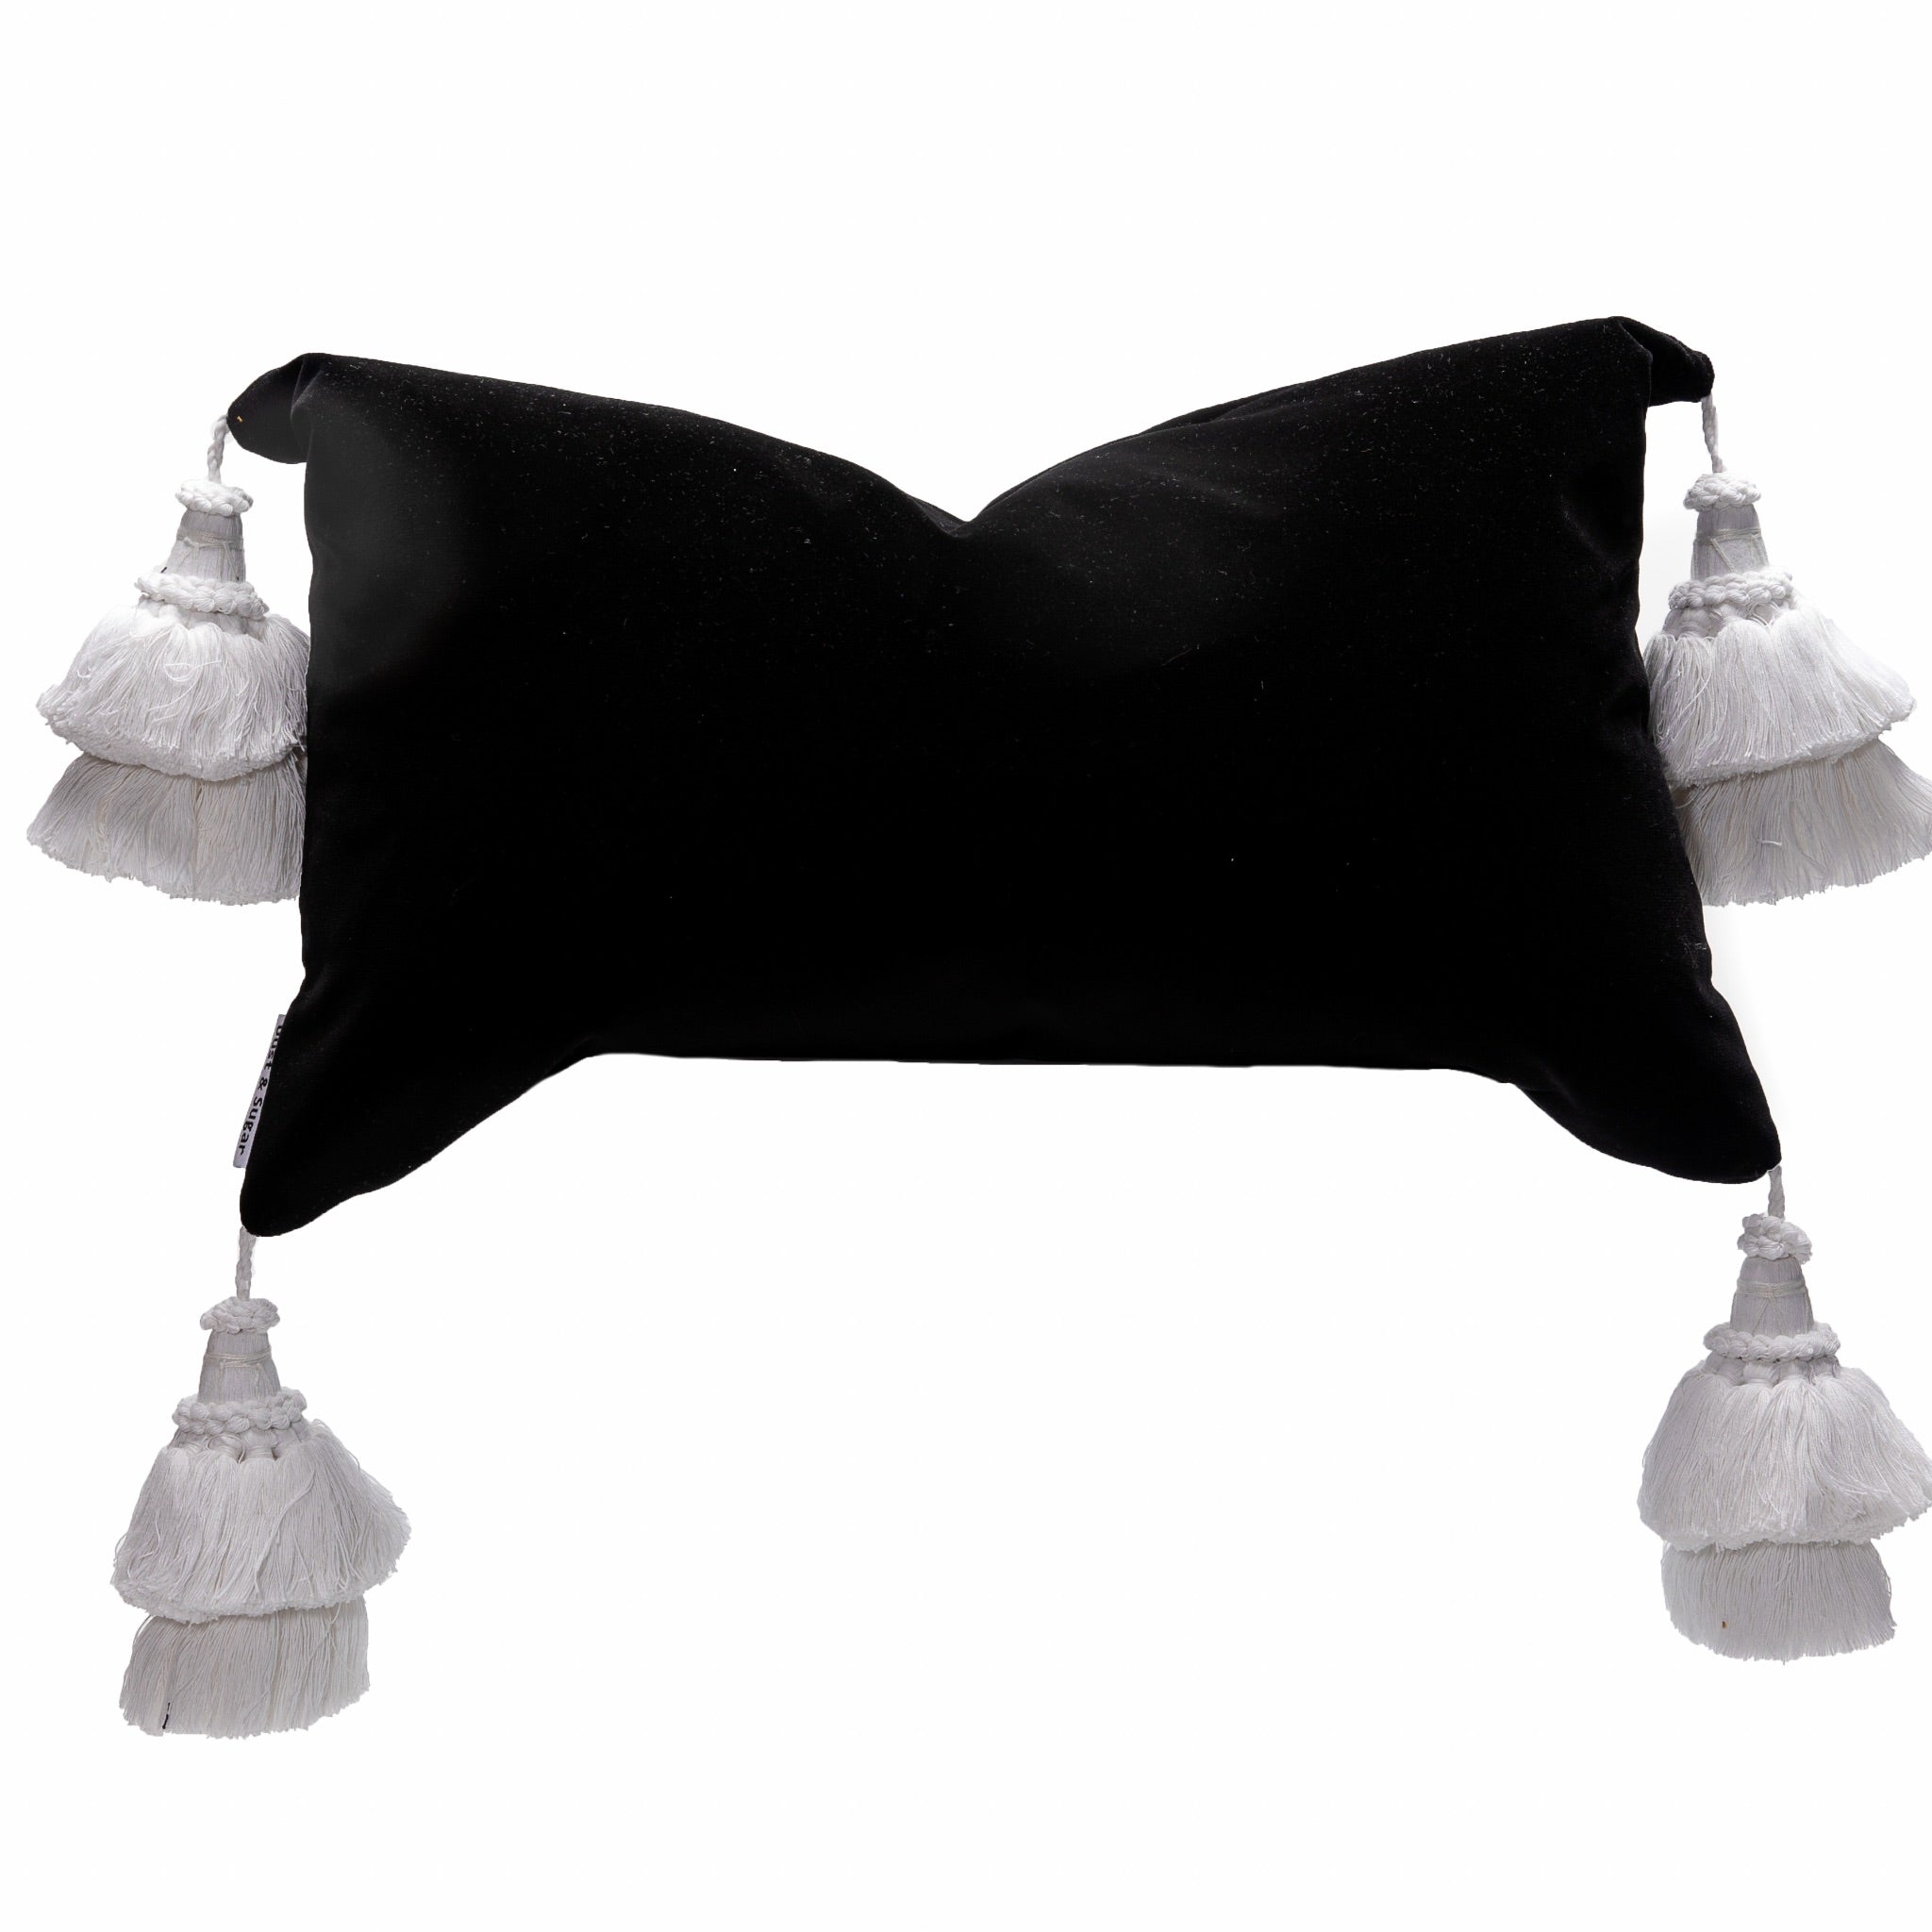 Black Velvet Pillow Cover With Handmade Tassels